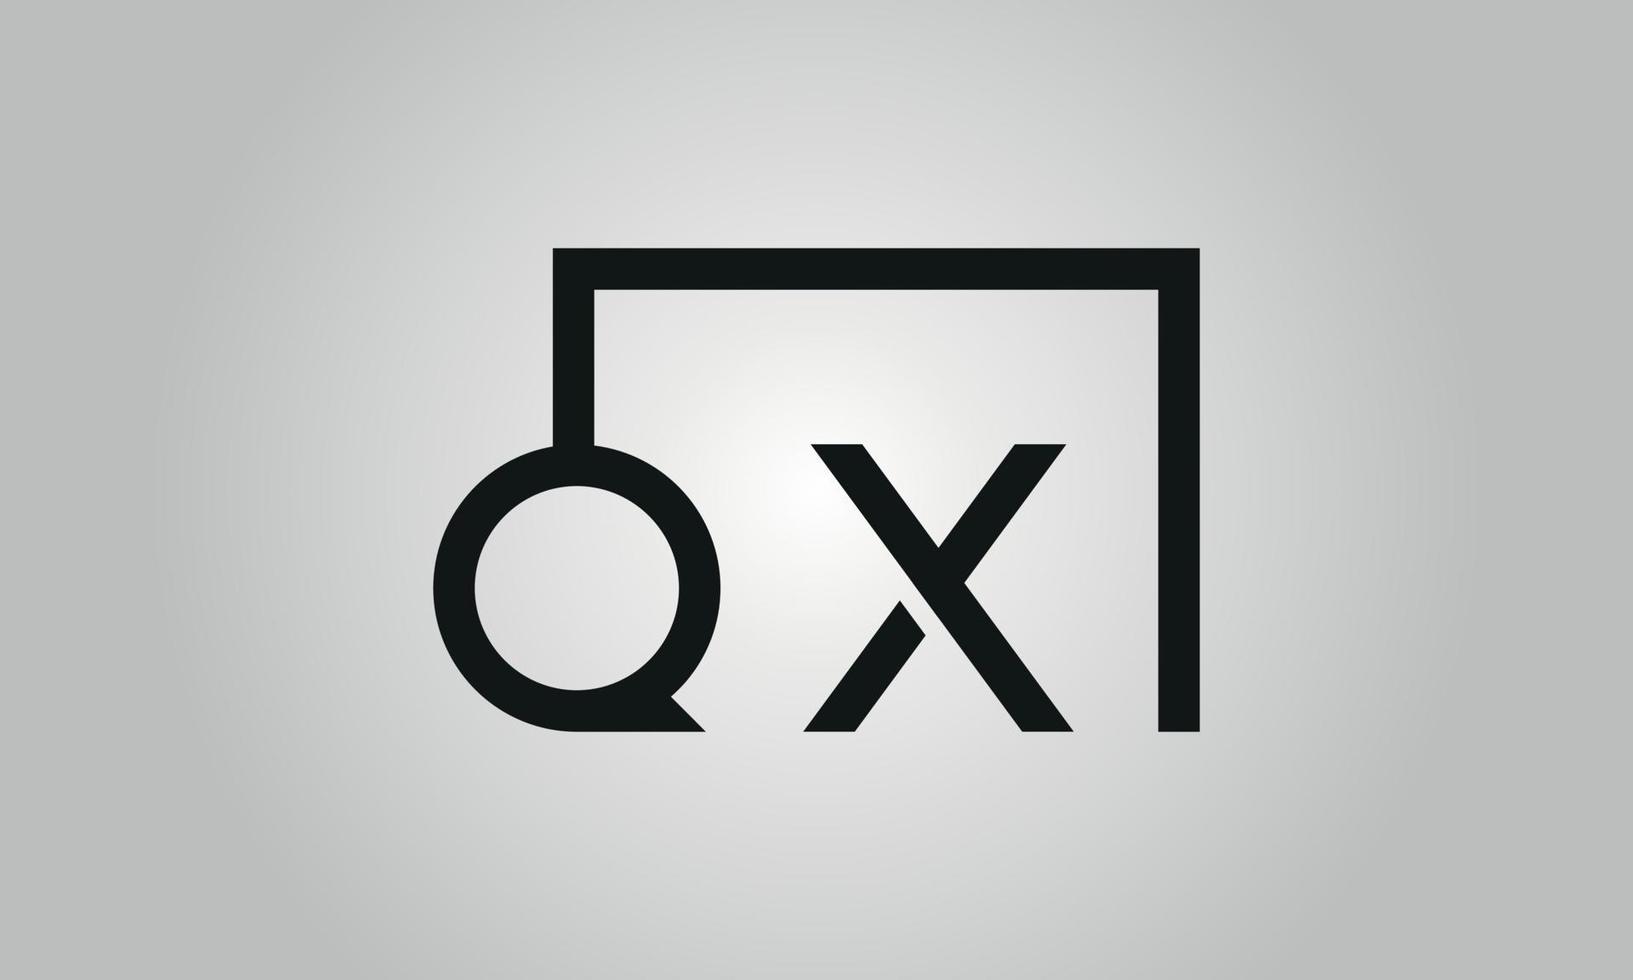 création de logo lettre qx. logo qx avec forme carrée dans le modèle vectoriel gratuit de couleurs noires.